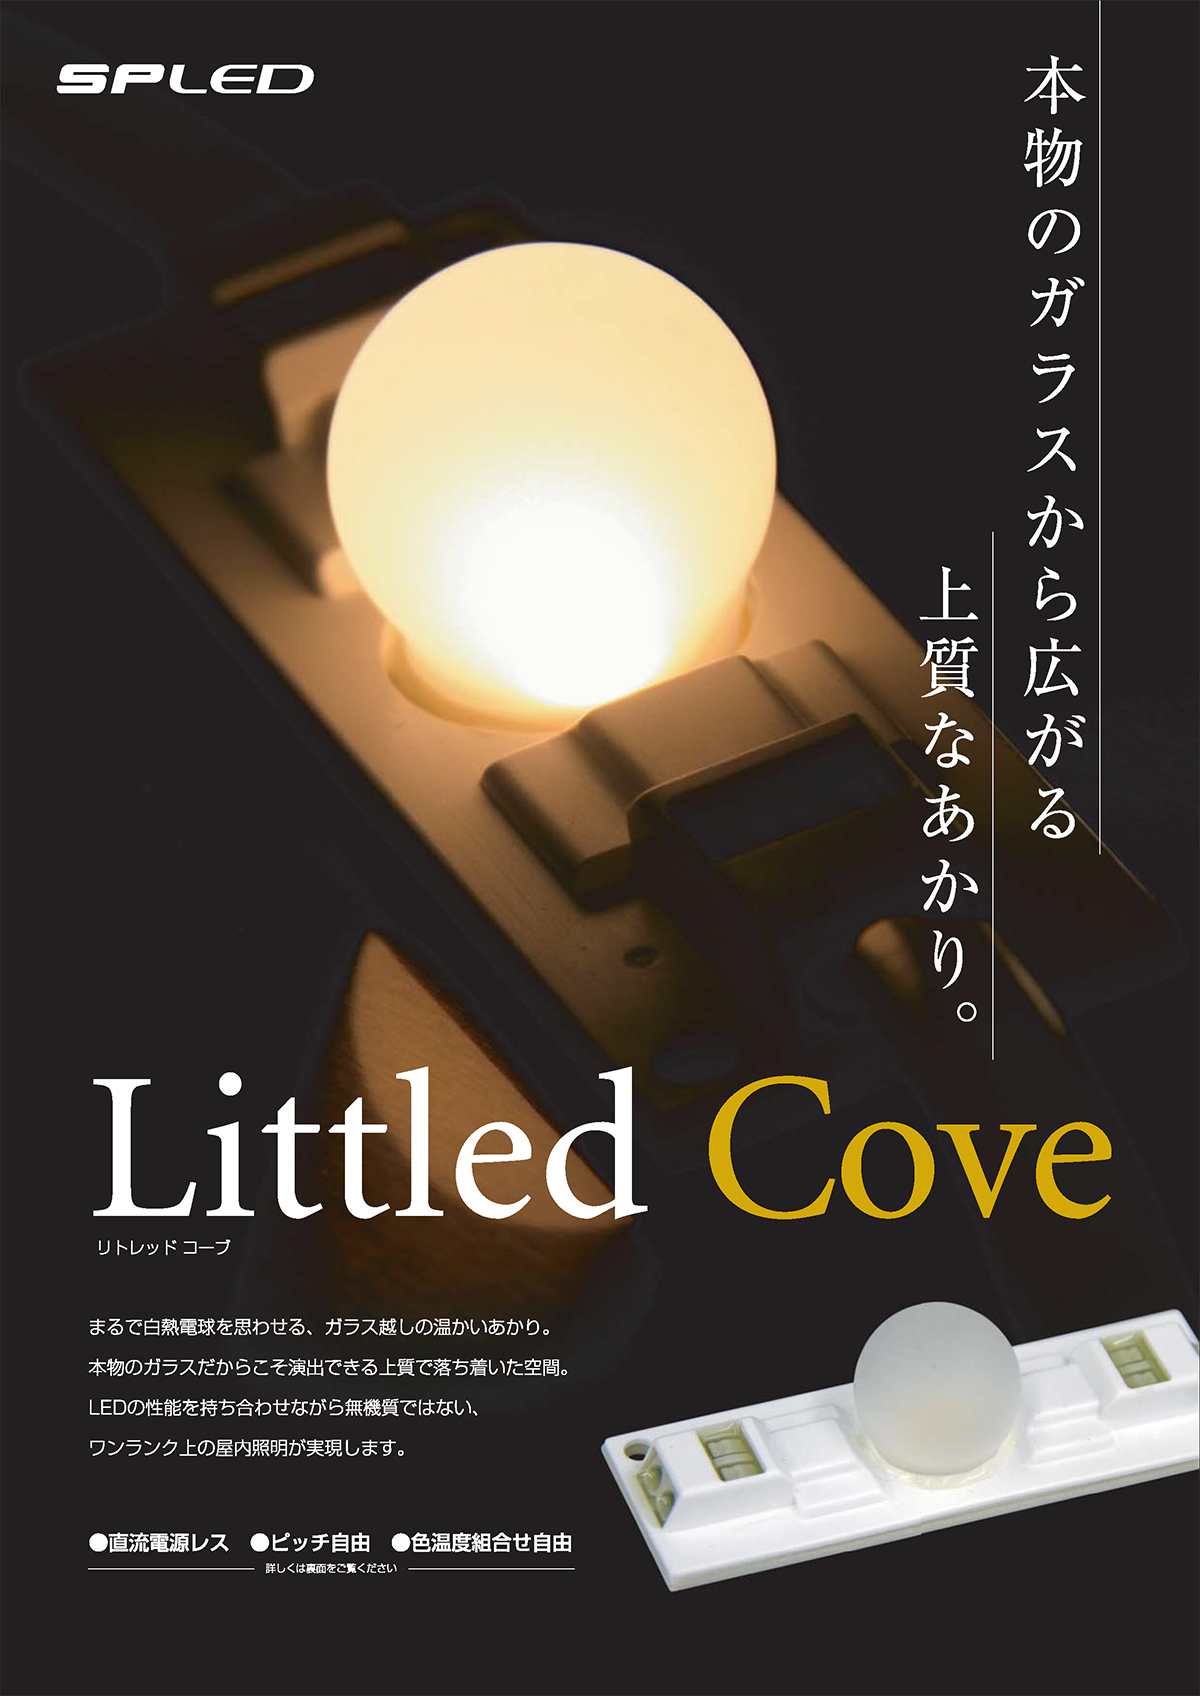 Littled Cove